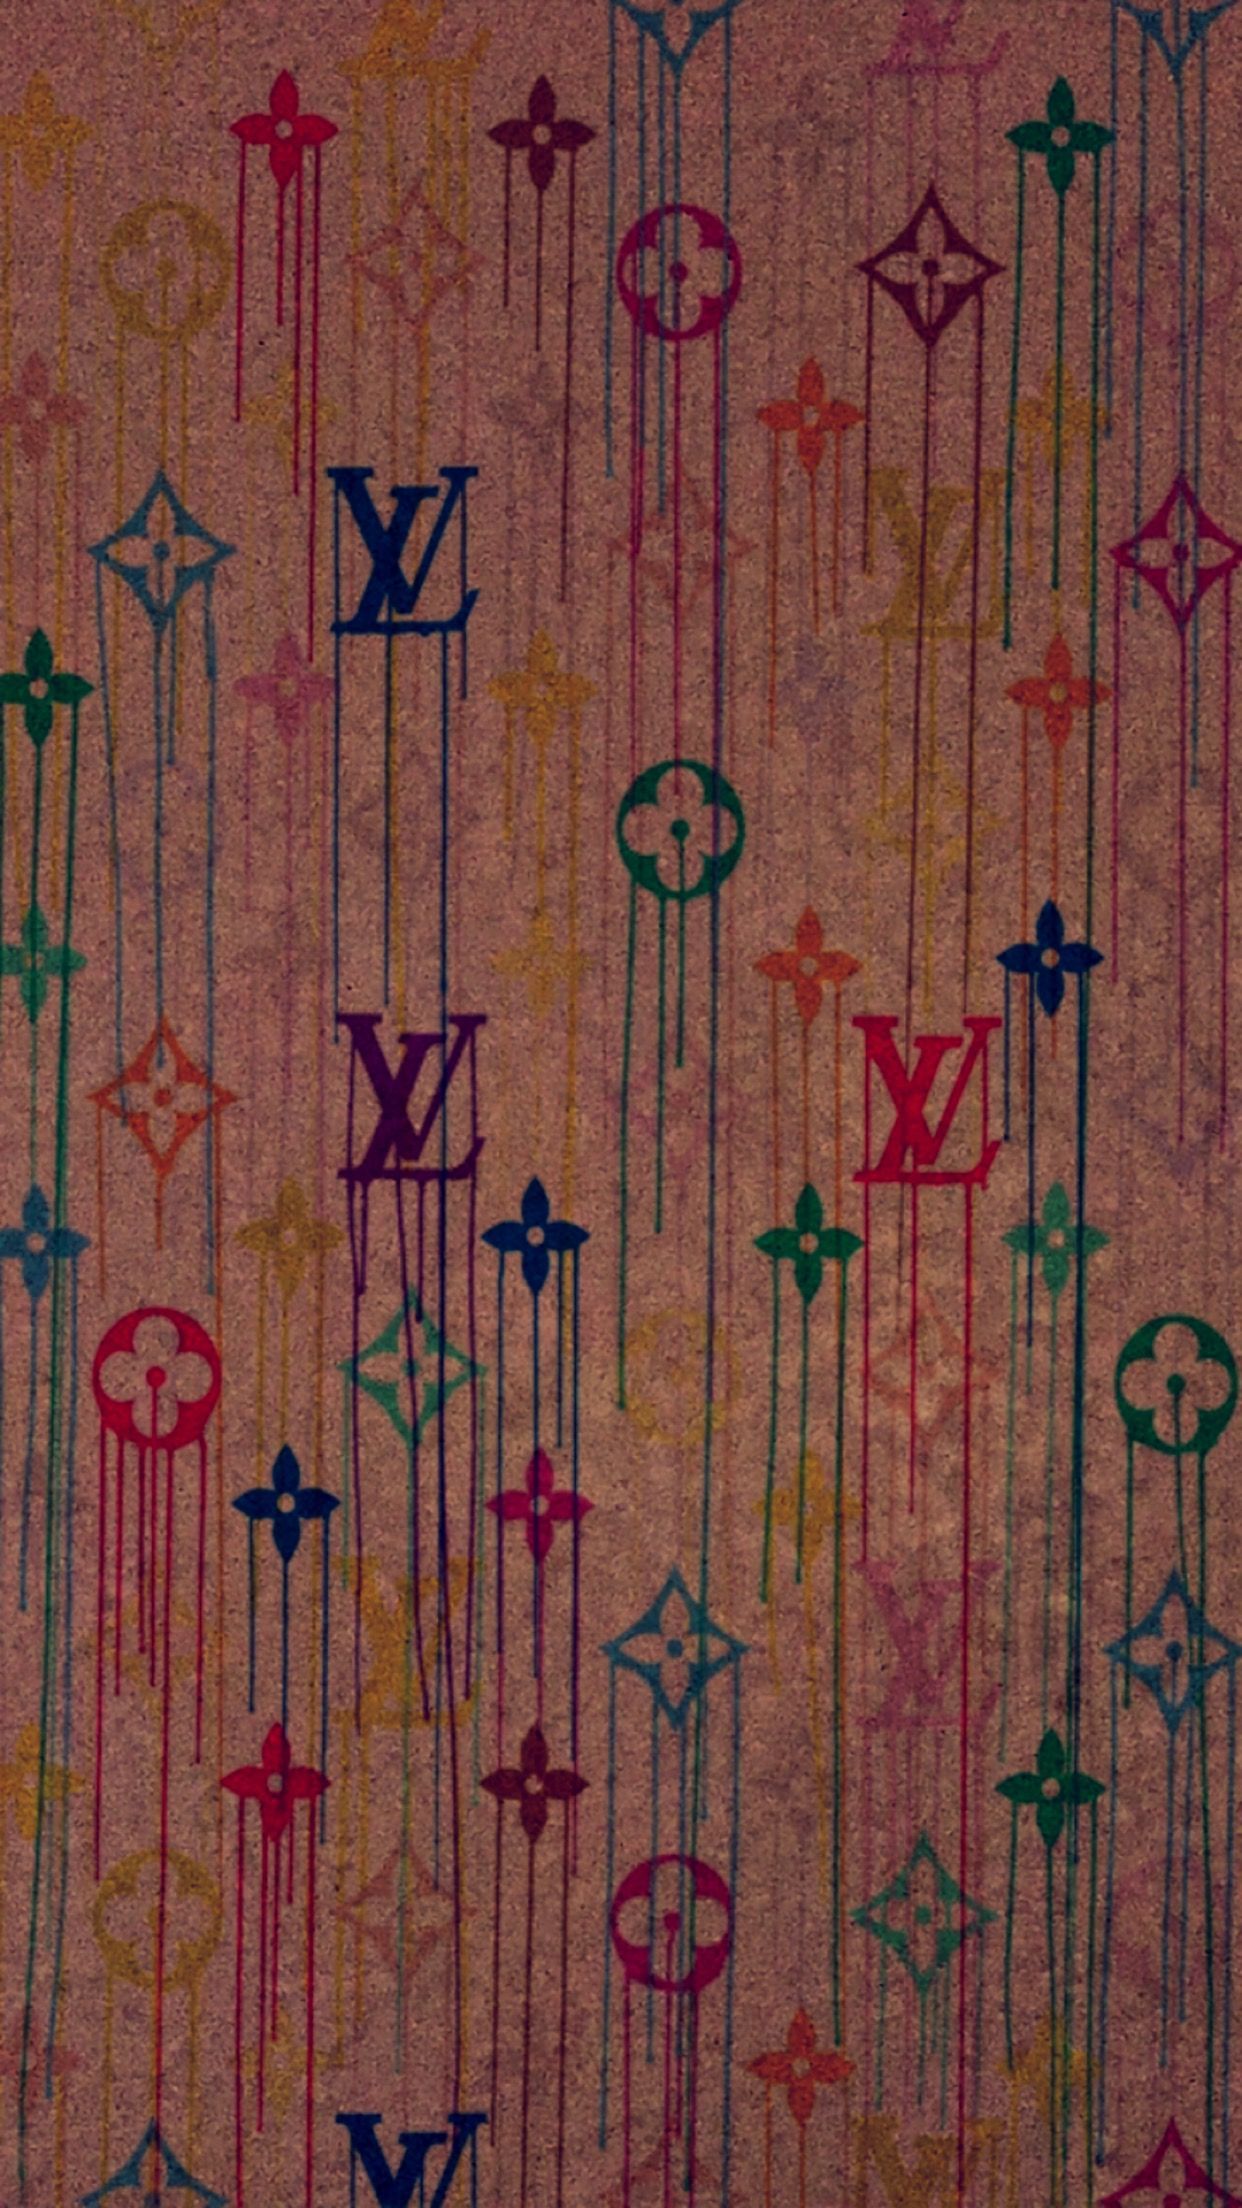 Louis Vuitton pattern  Louis vuitton pattern, Louis vuitton iphone  wallpaper, Blue wallpaper iphone